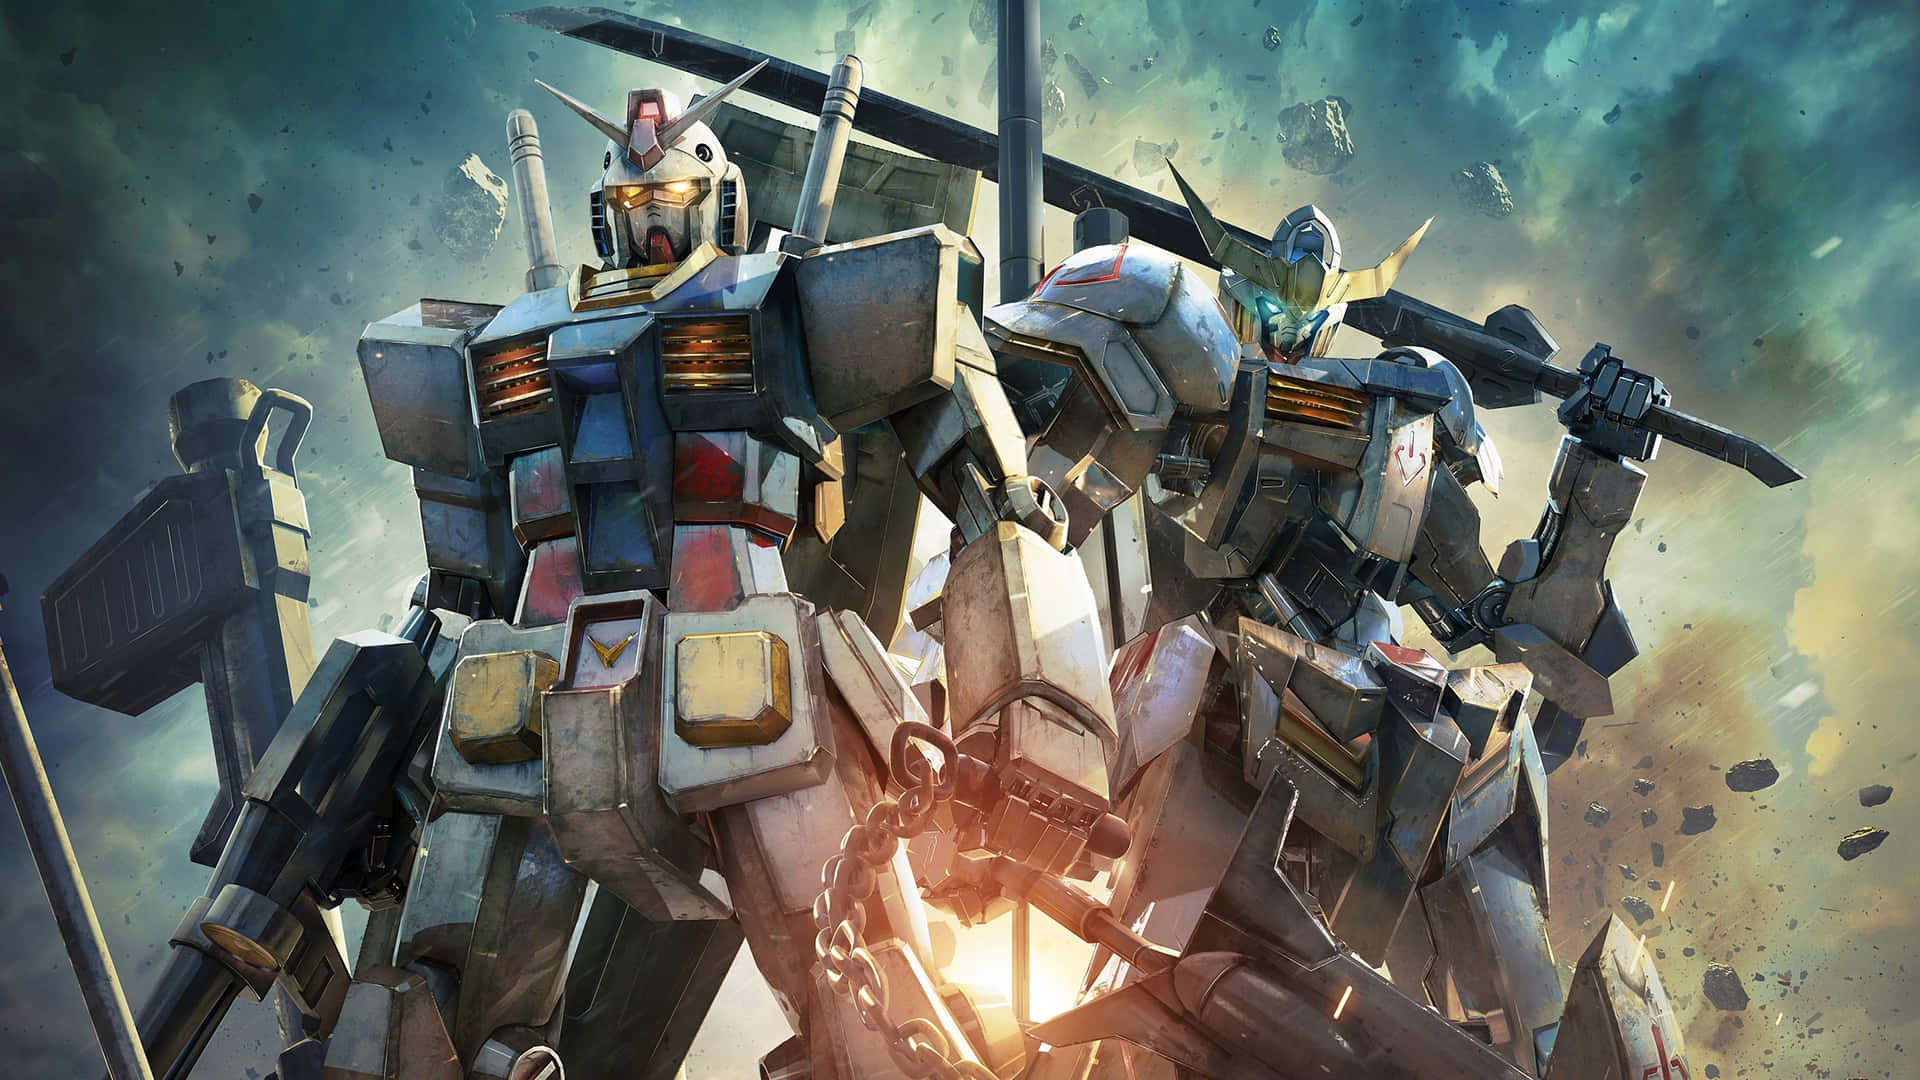 Gundam00 - En Samurajkrigare. Wallpaper